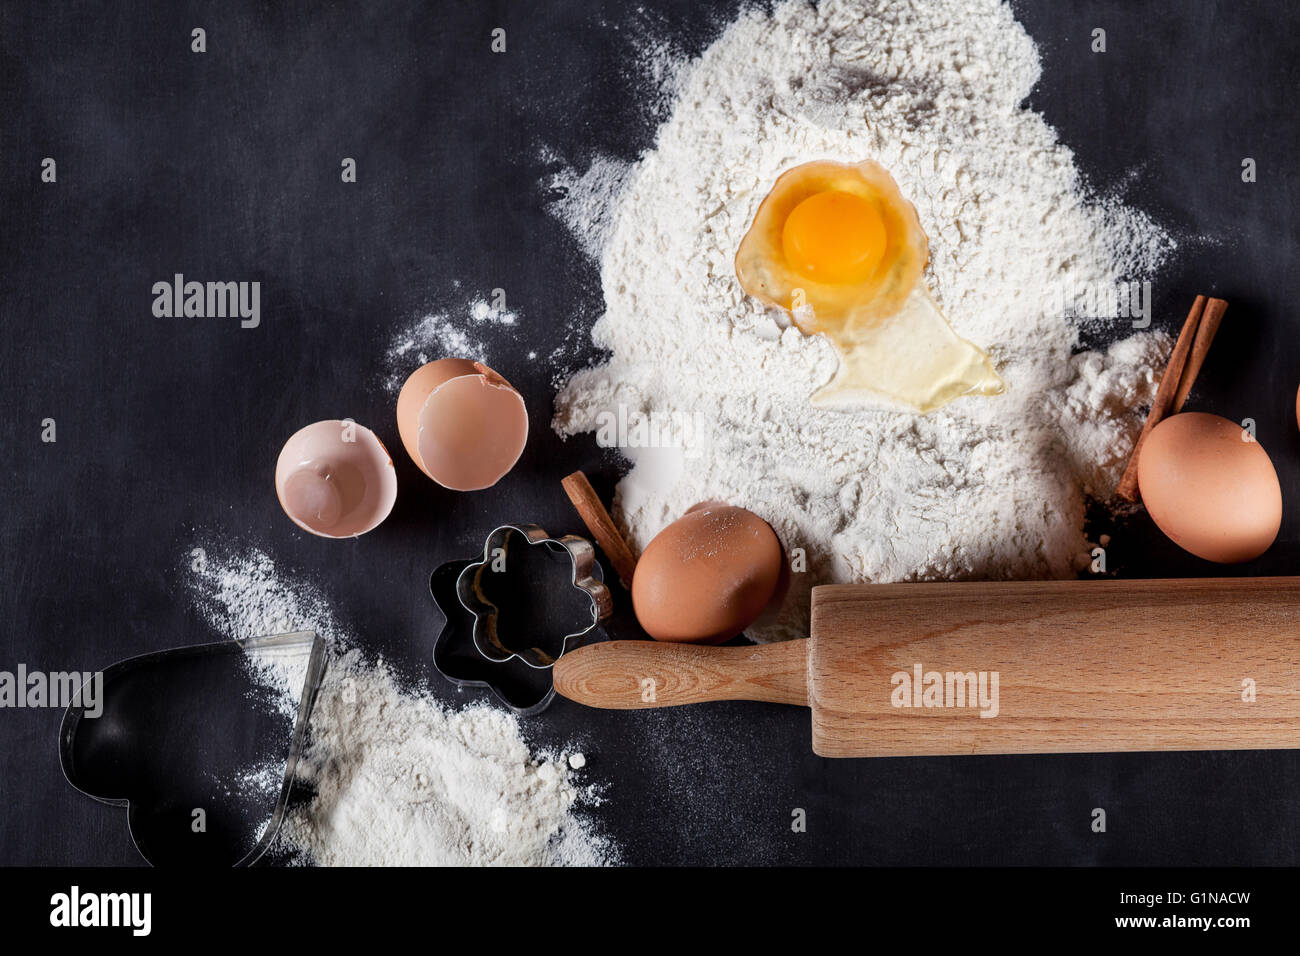 Zutaten wie Eiern, Mehl, Zimt, Anis, Nudelholz, Papier auf Tafel Stockfoto